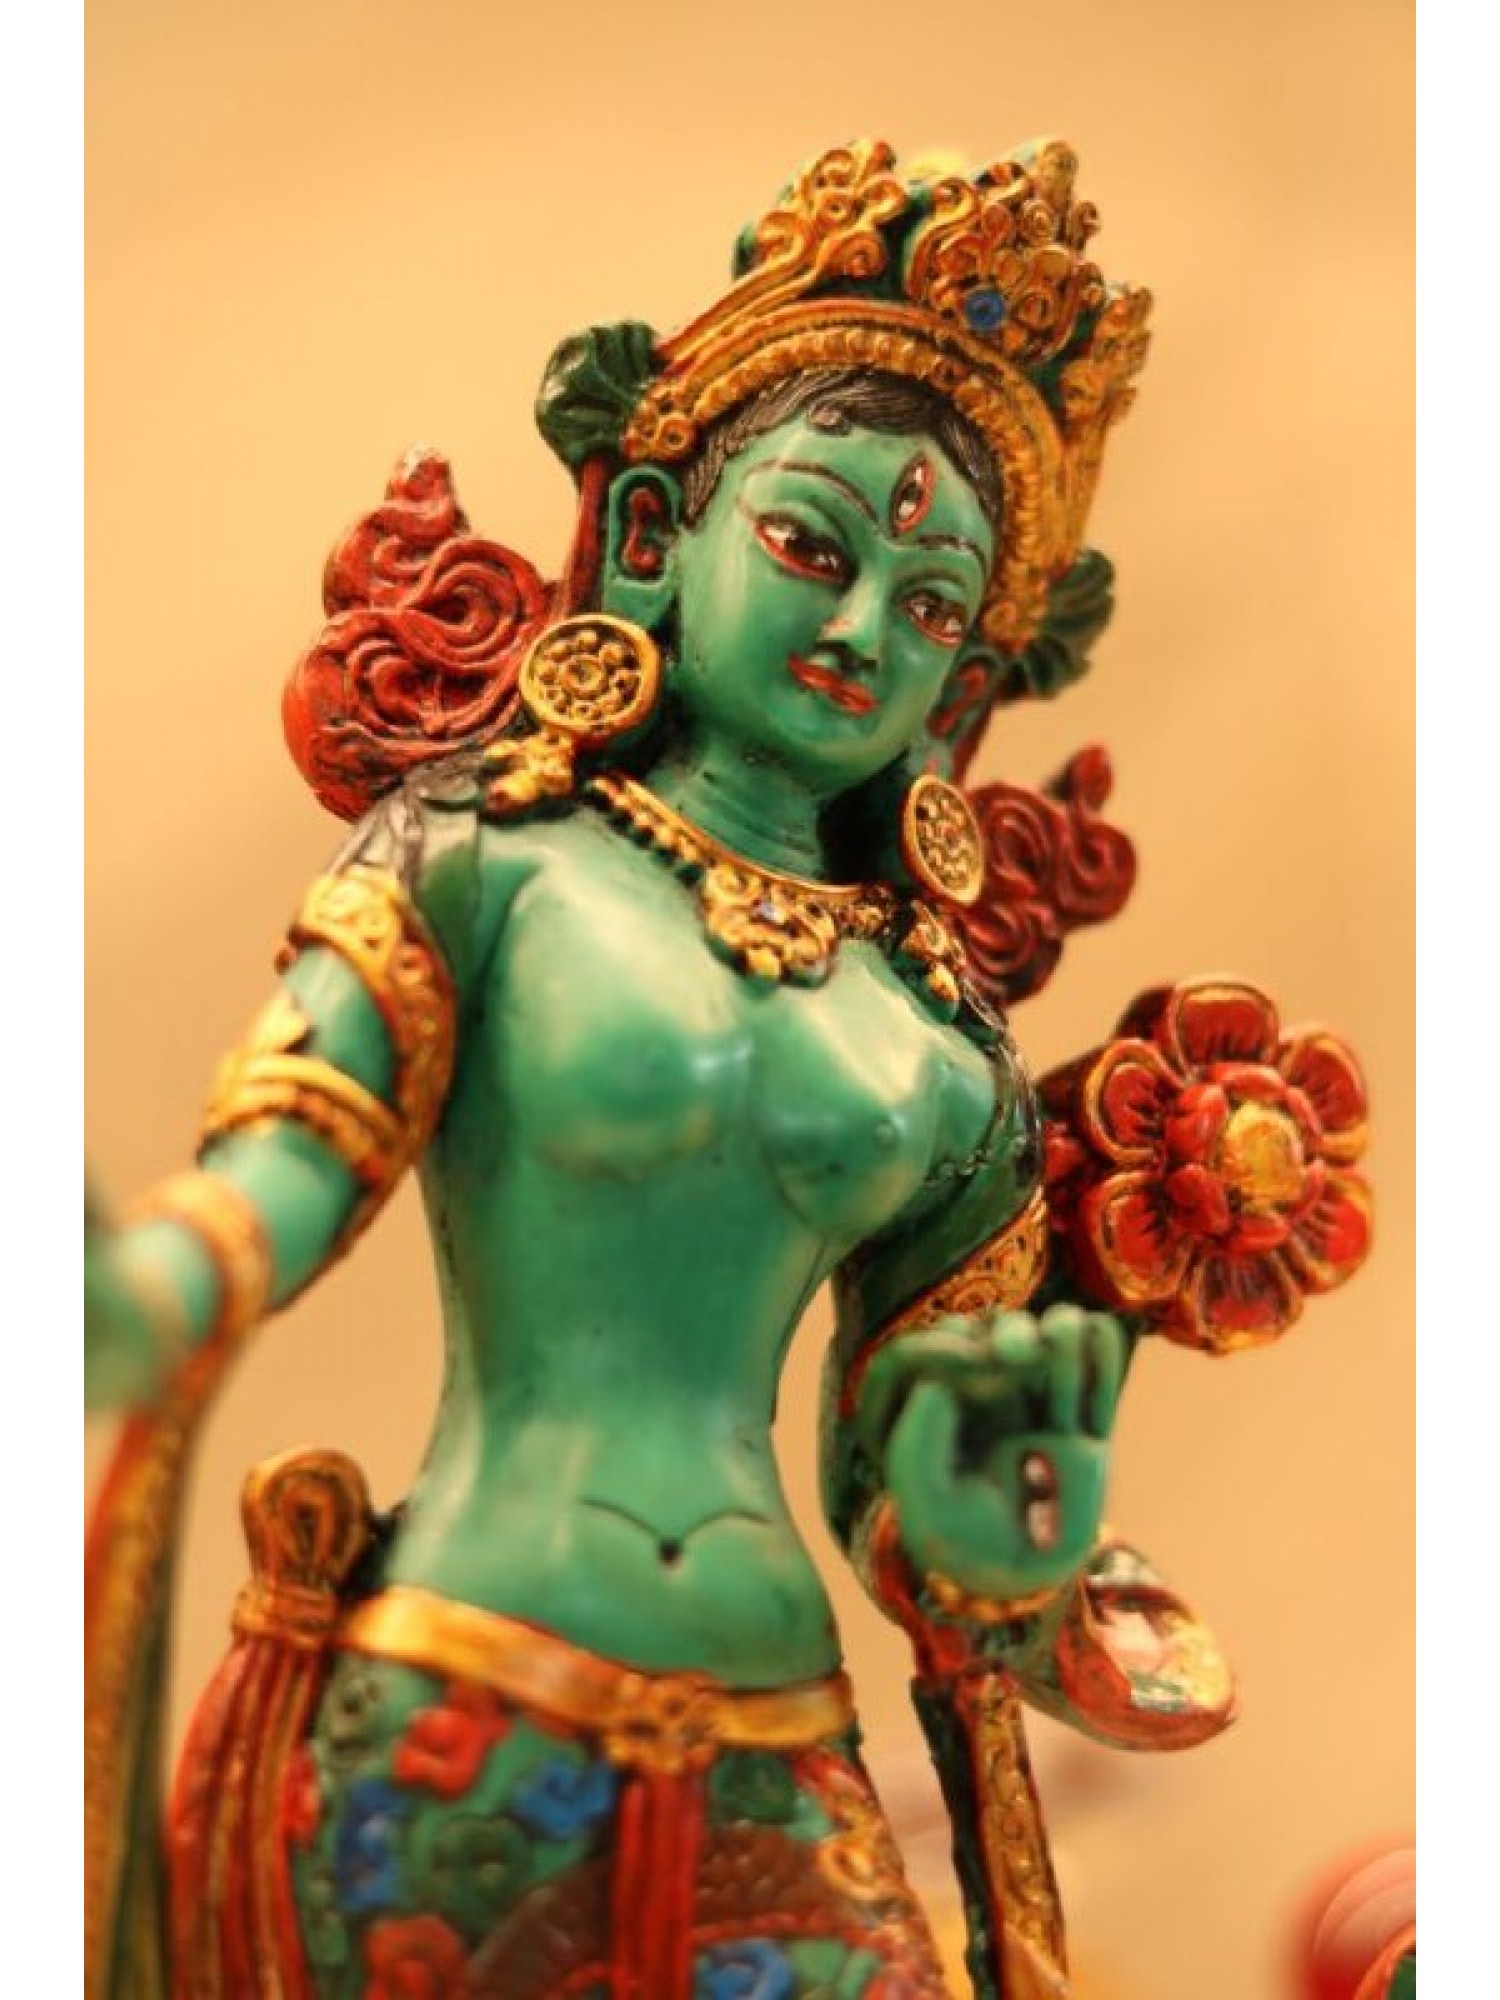 Статуэтка "Зеленая Тара" из Непала из смолы (стоящая на лотосе)